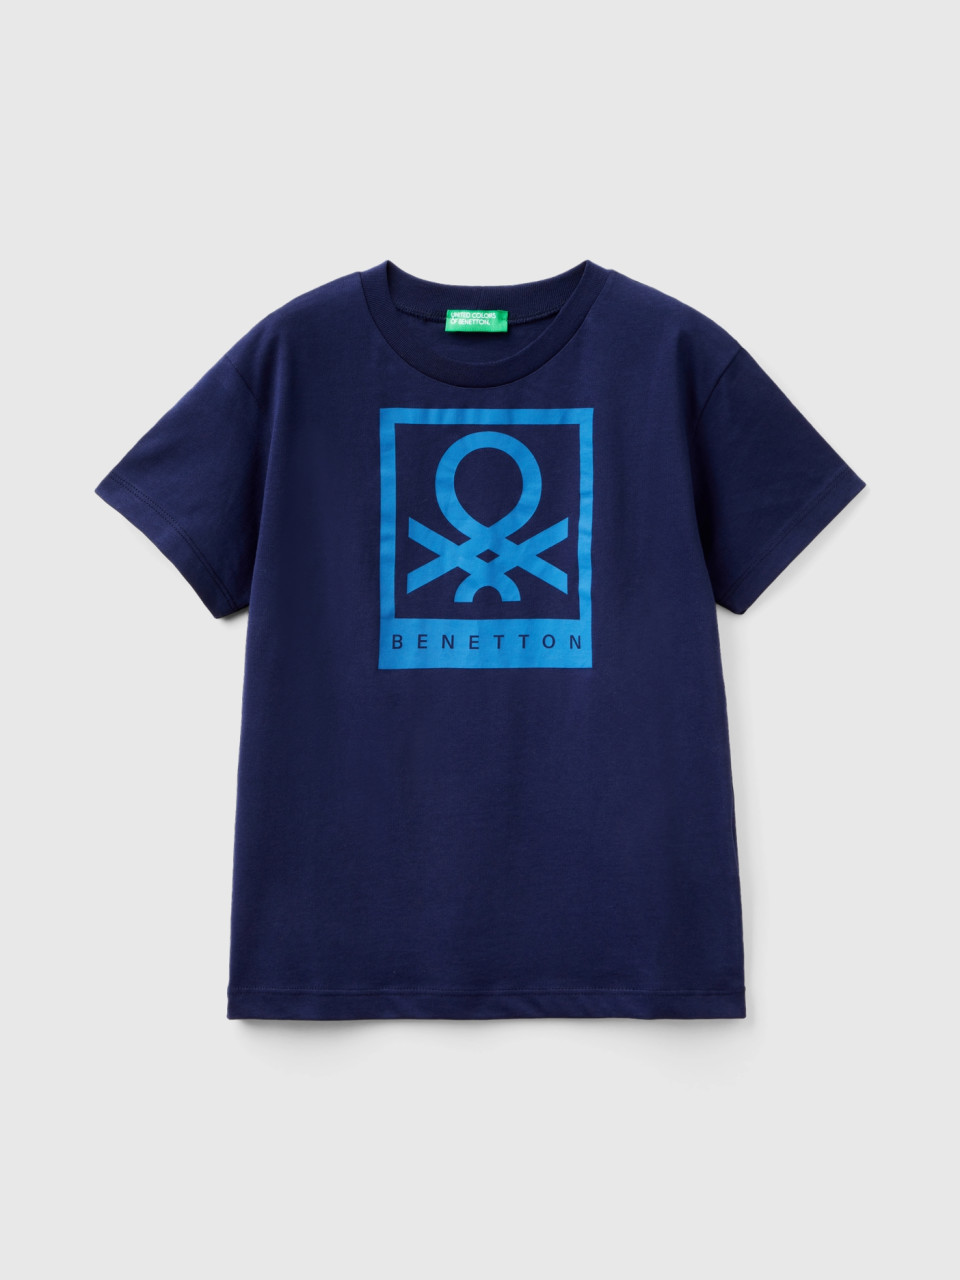 Benetton, 100% Cotton T-shirt With Logo, Dark Blue, Kids